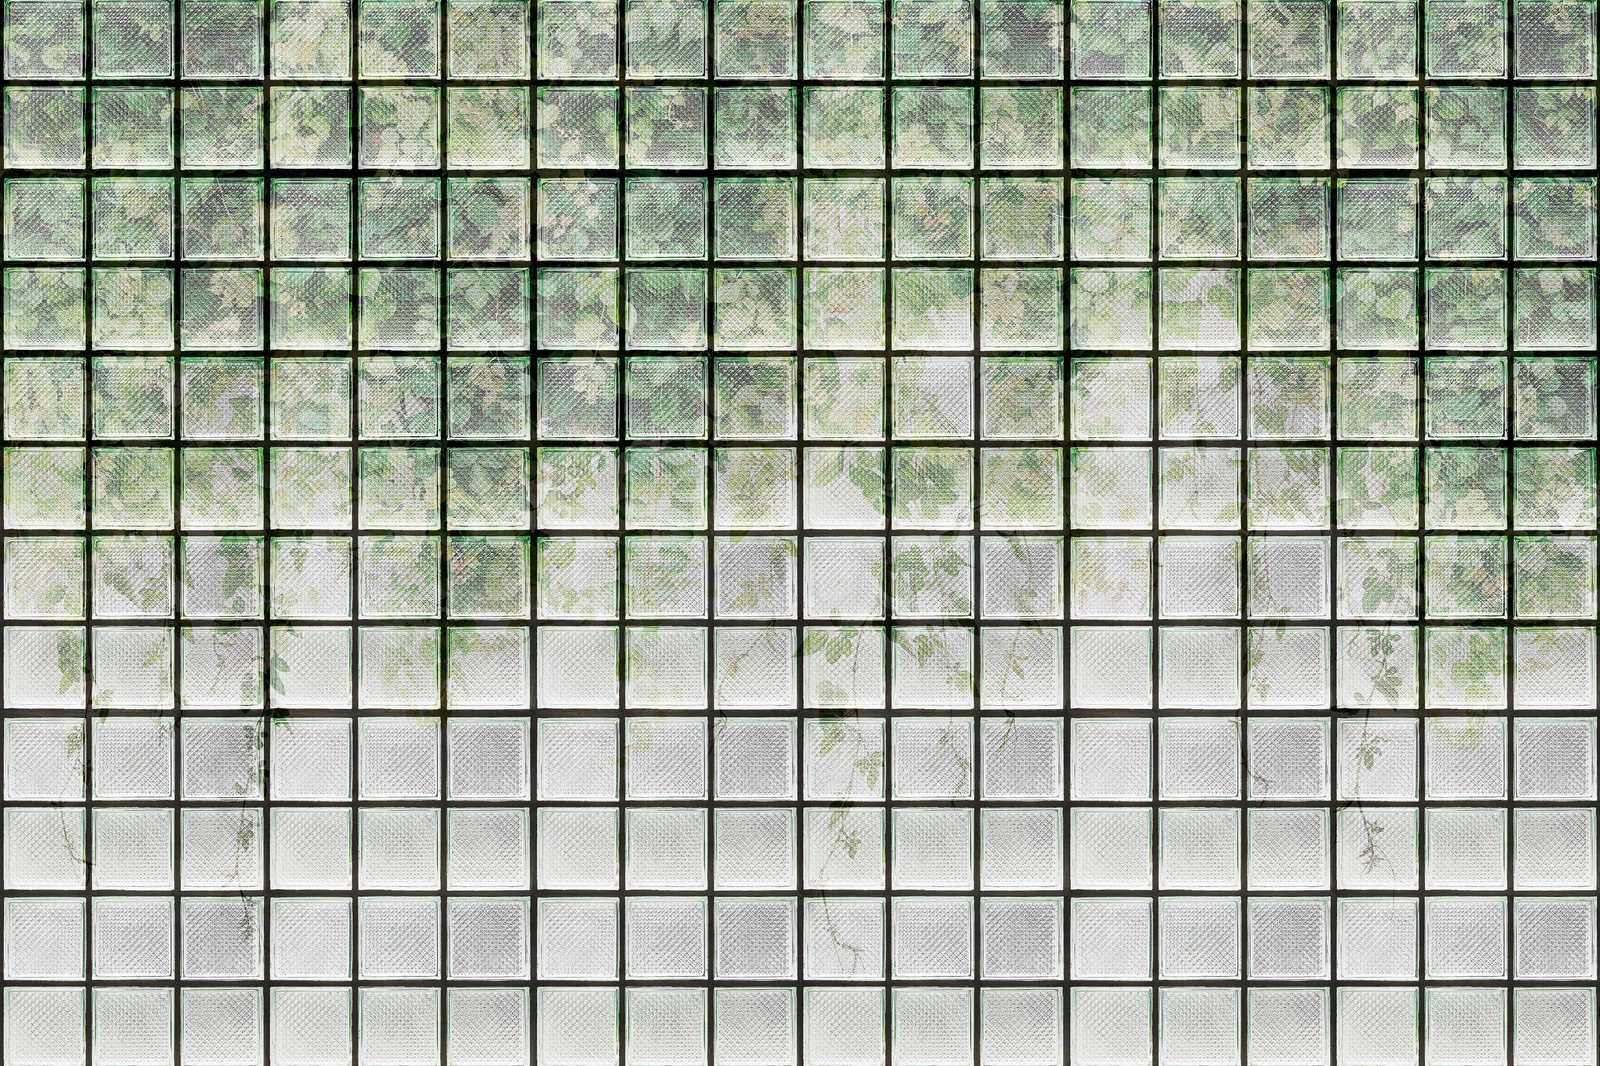             Green House 2 - Quadro su tela della serra Foglie e mattoni di vetro - 0,90 m x 0,60 m
        